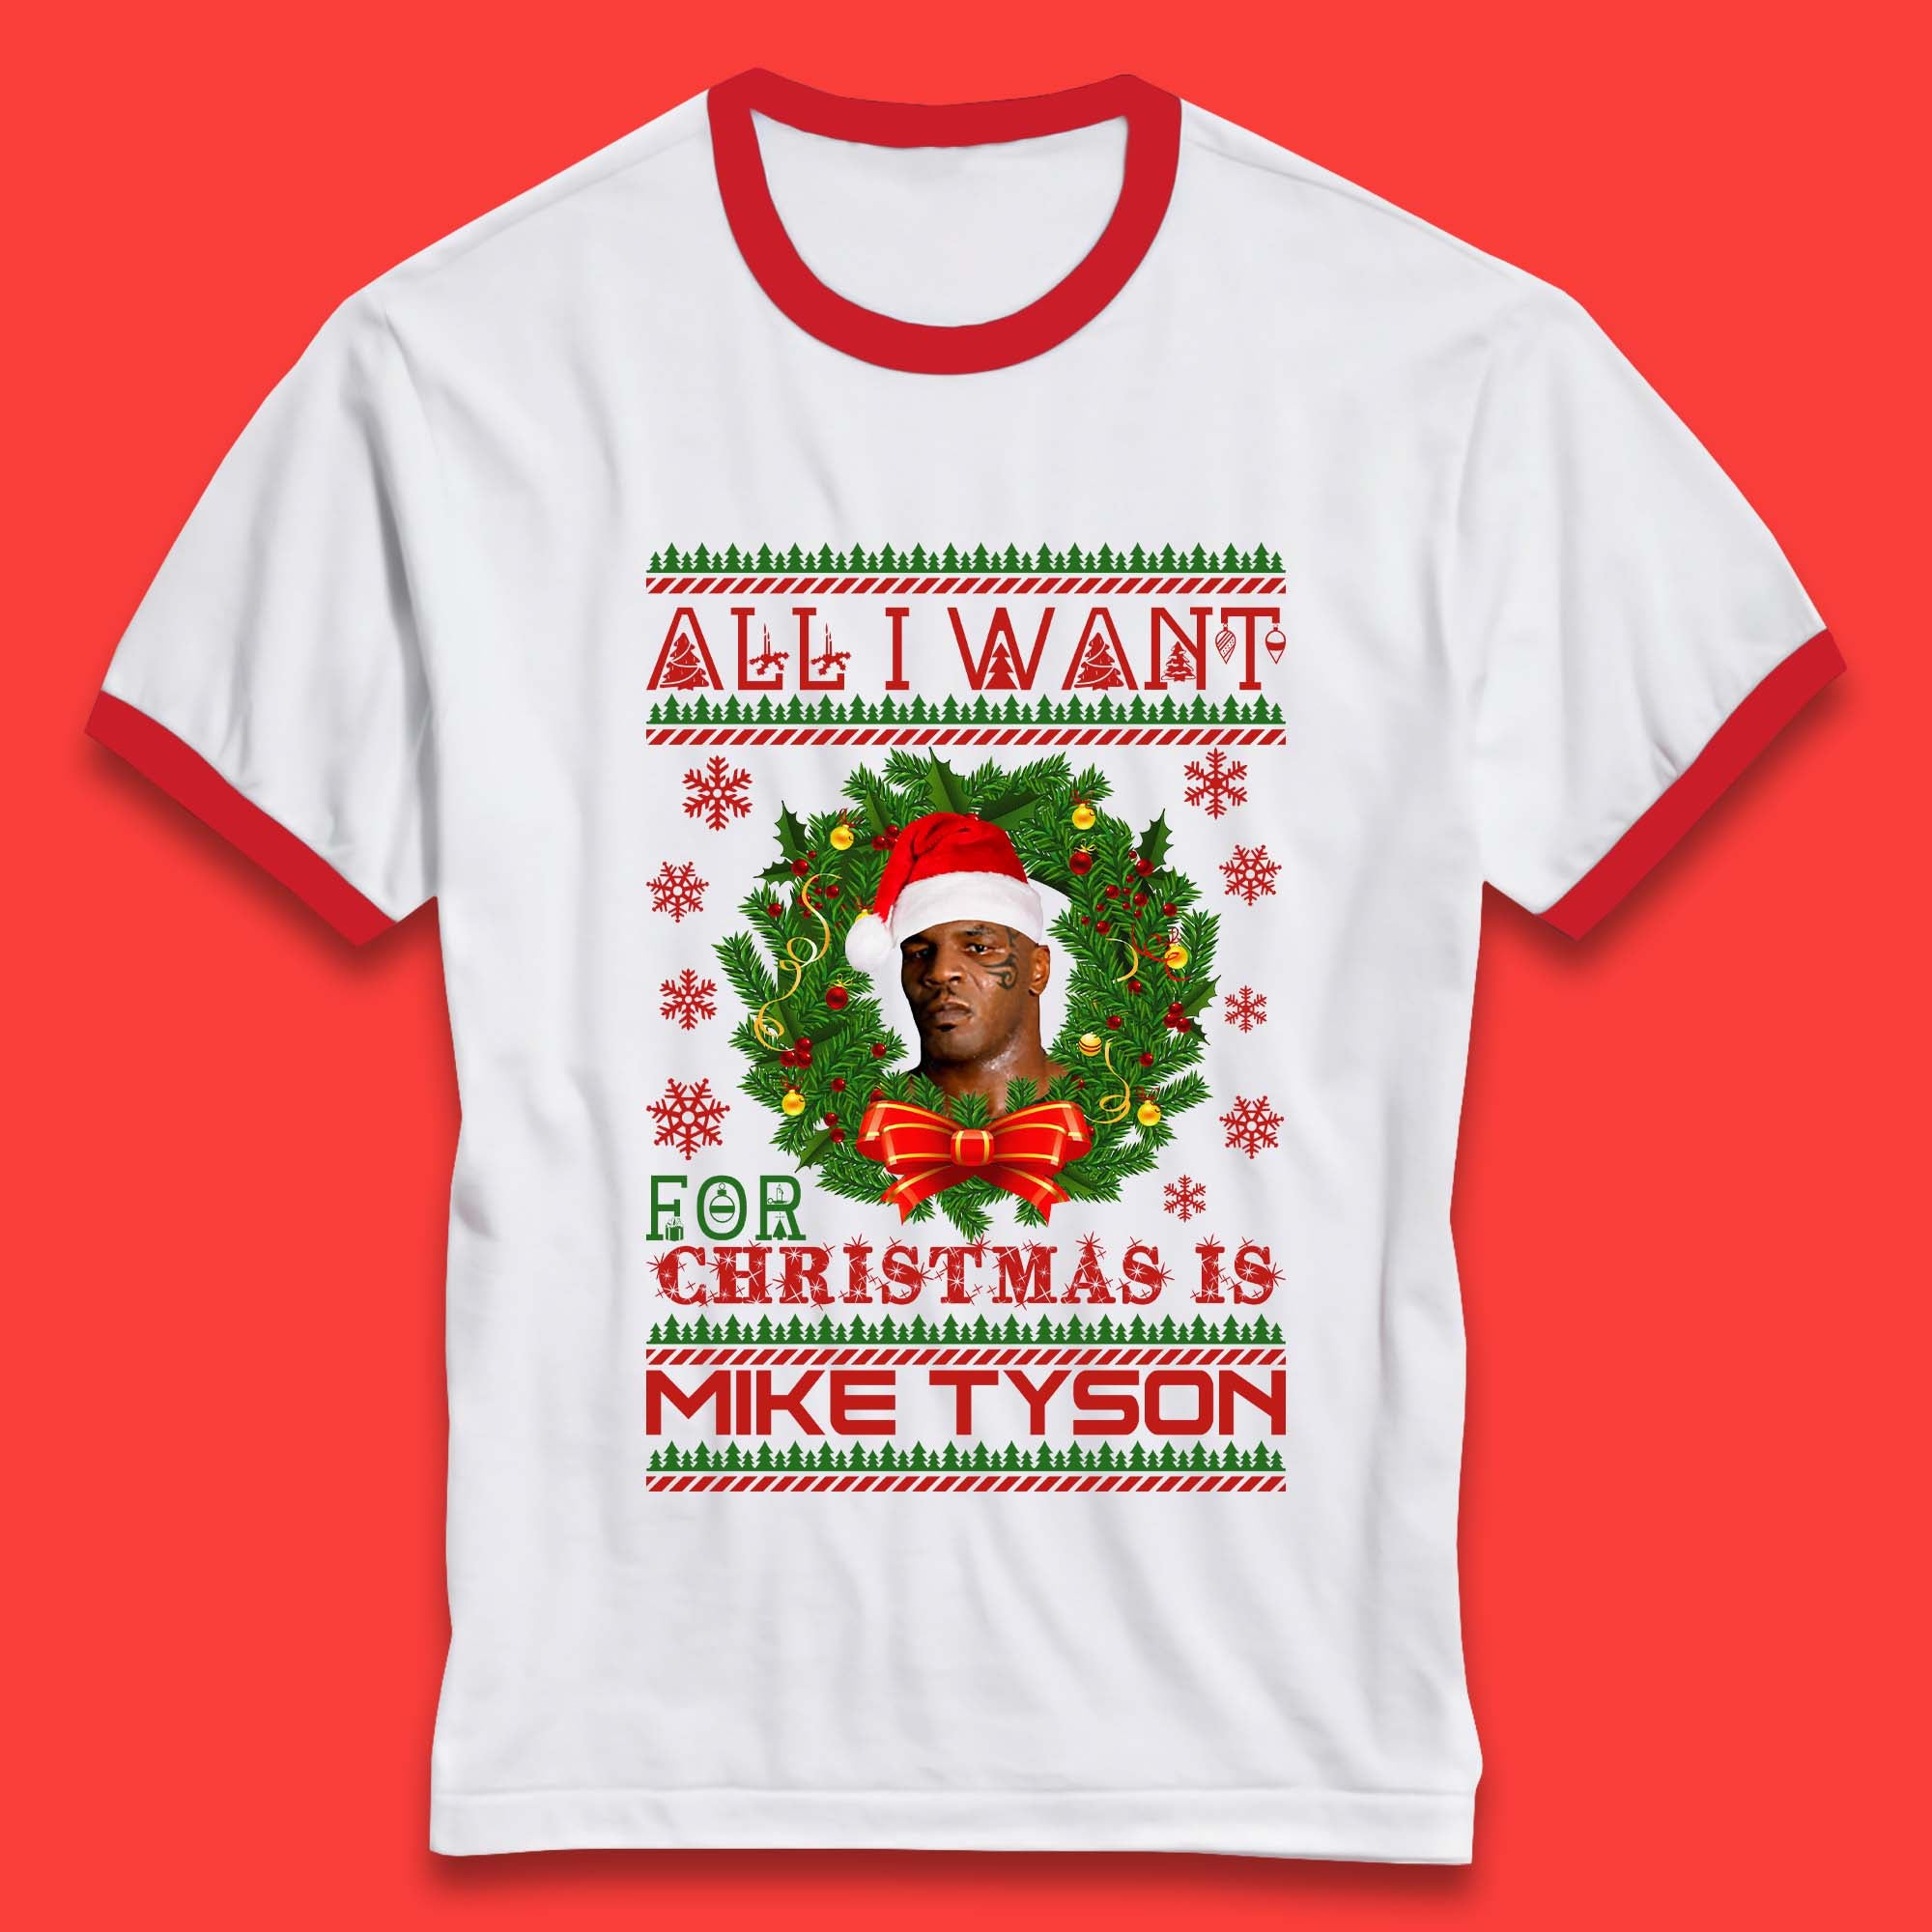 Mike Tyson Christmas Ringer T-Shirt